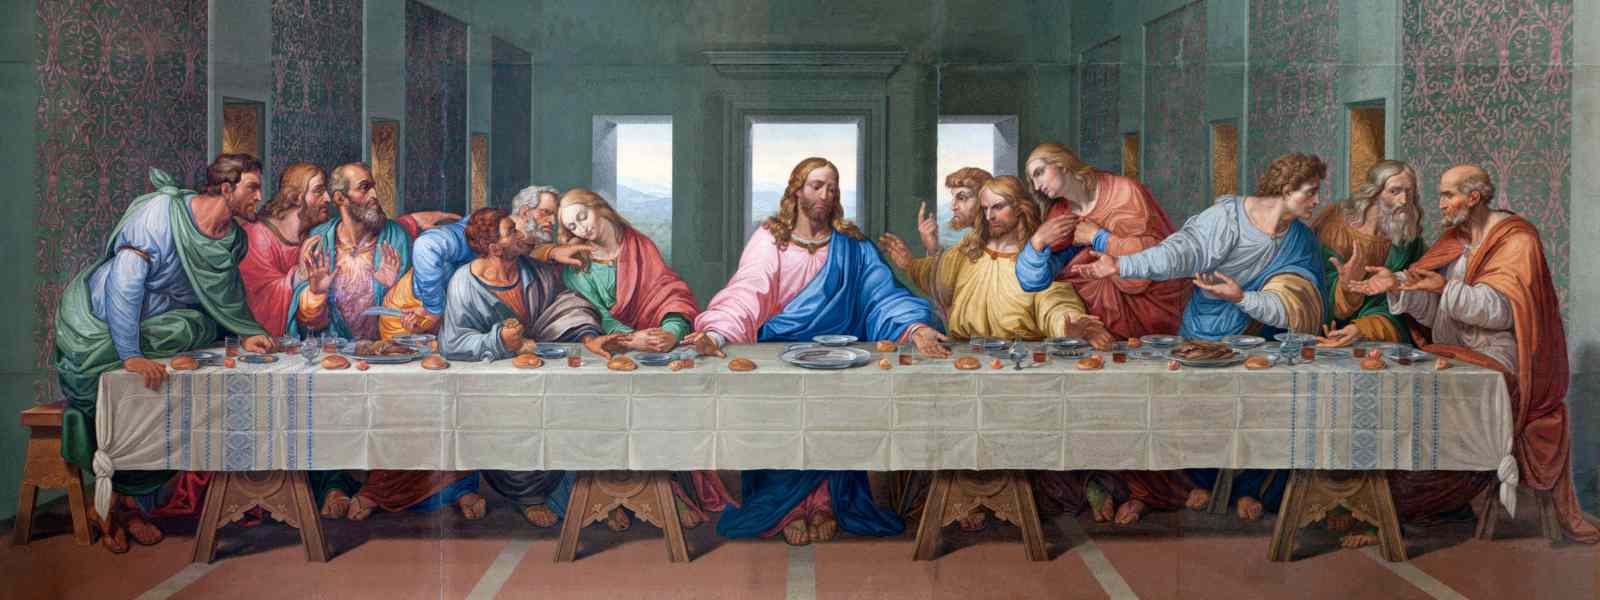 Картина последняя вечеря христа